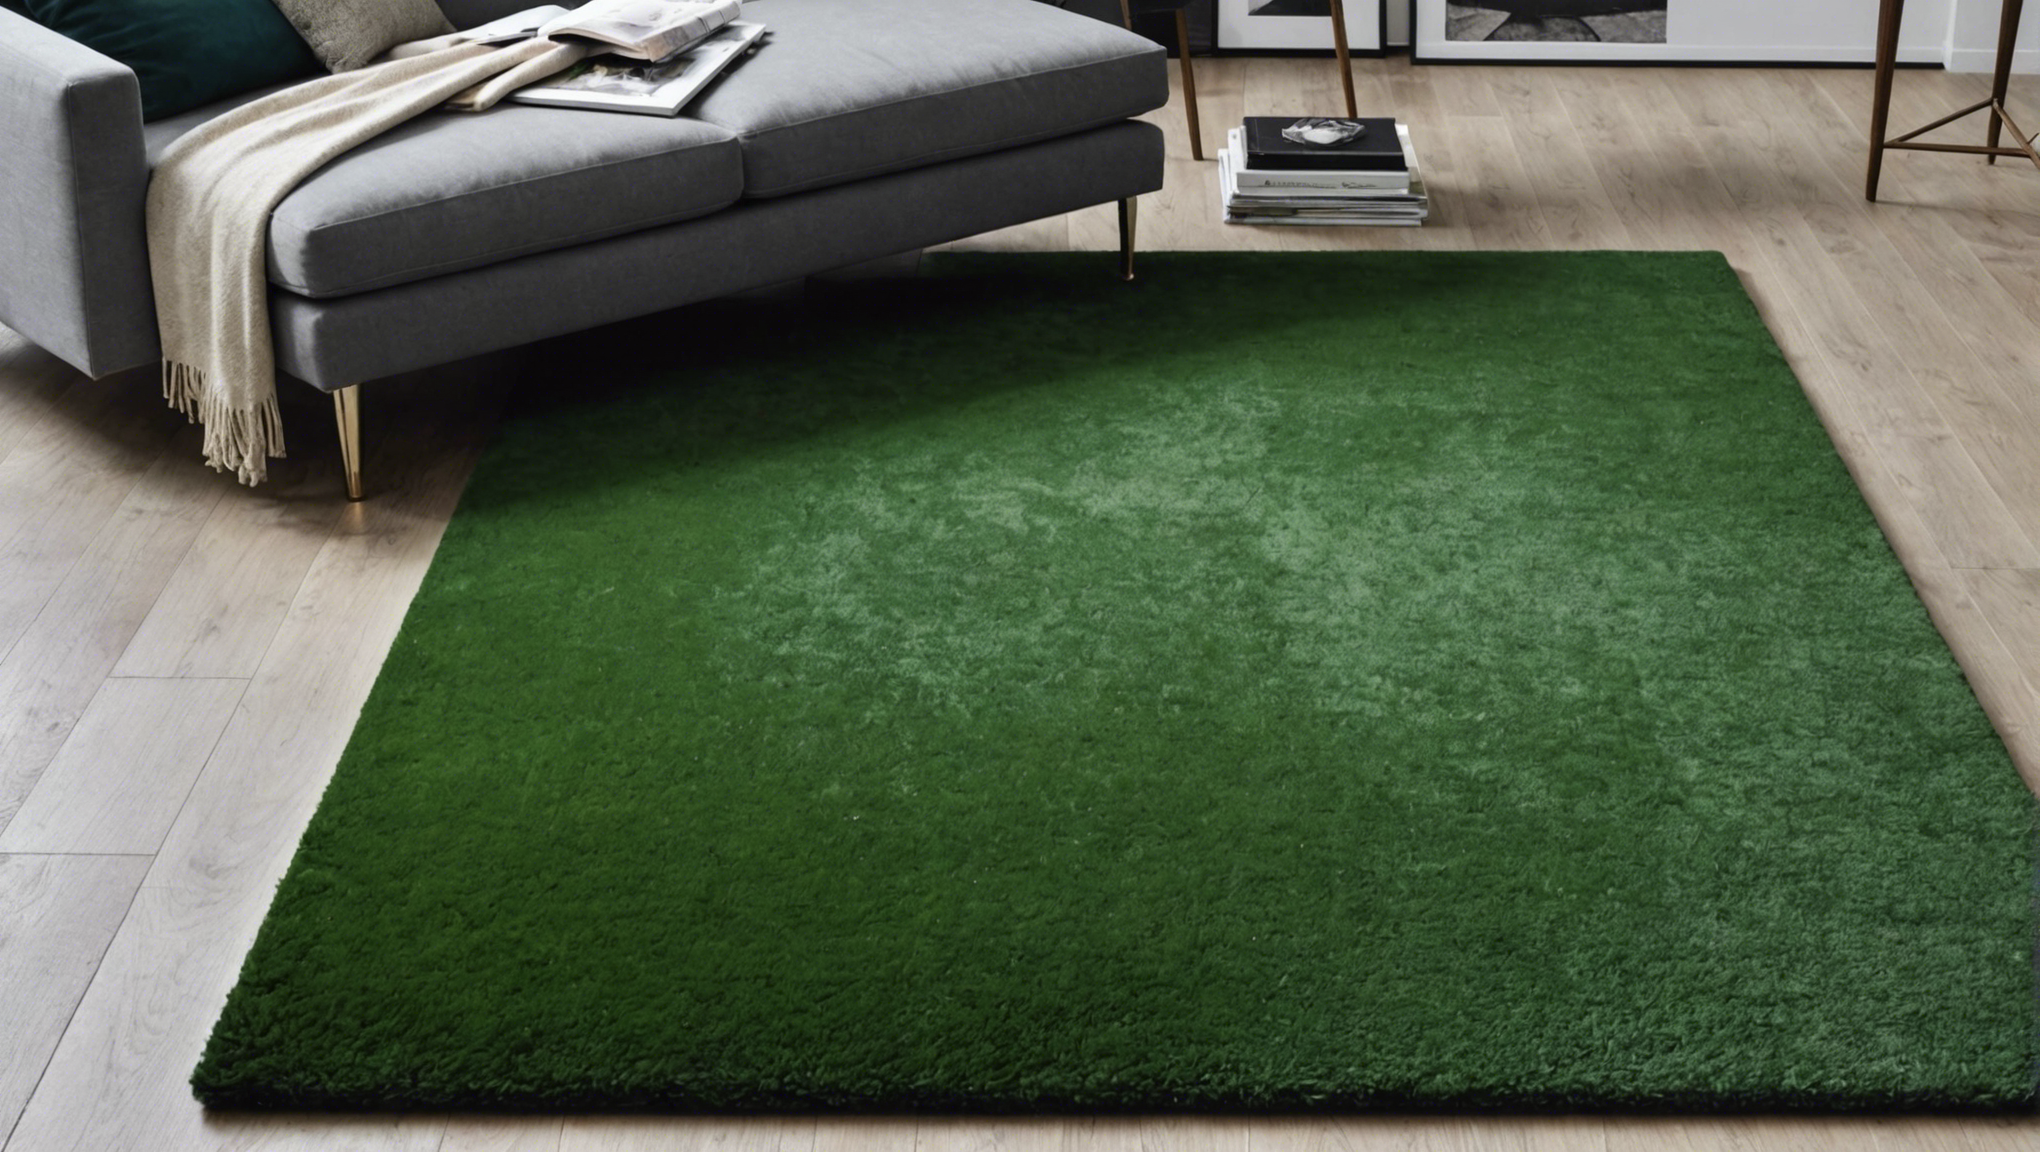 découvrez comment métamorphoser une friche en un somptueux tapis vert grâce à nos conseils experts.